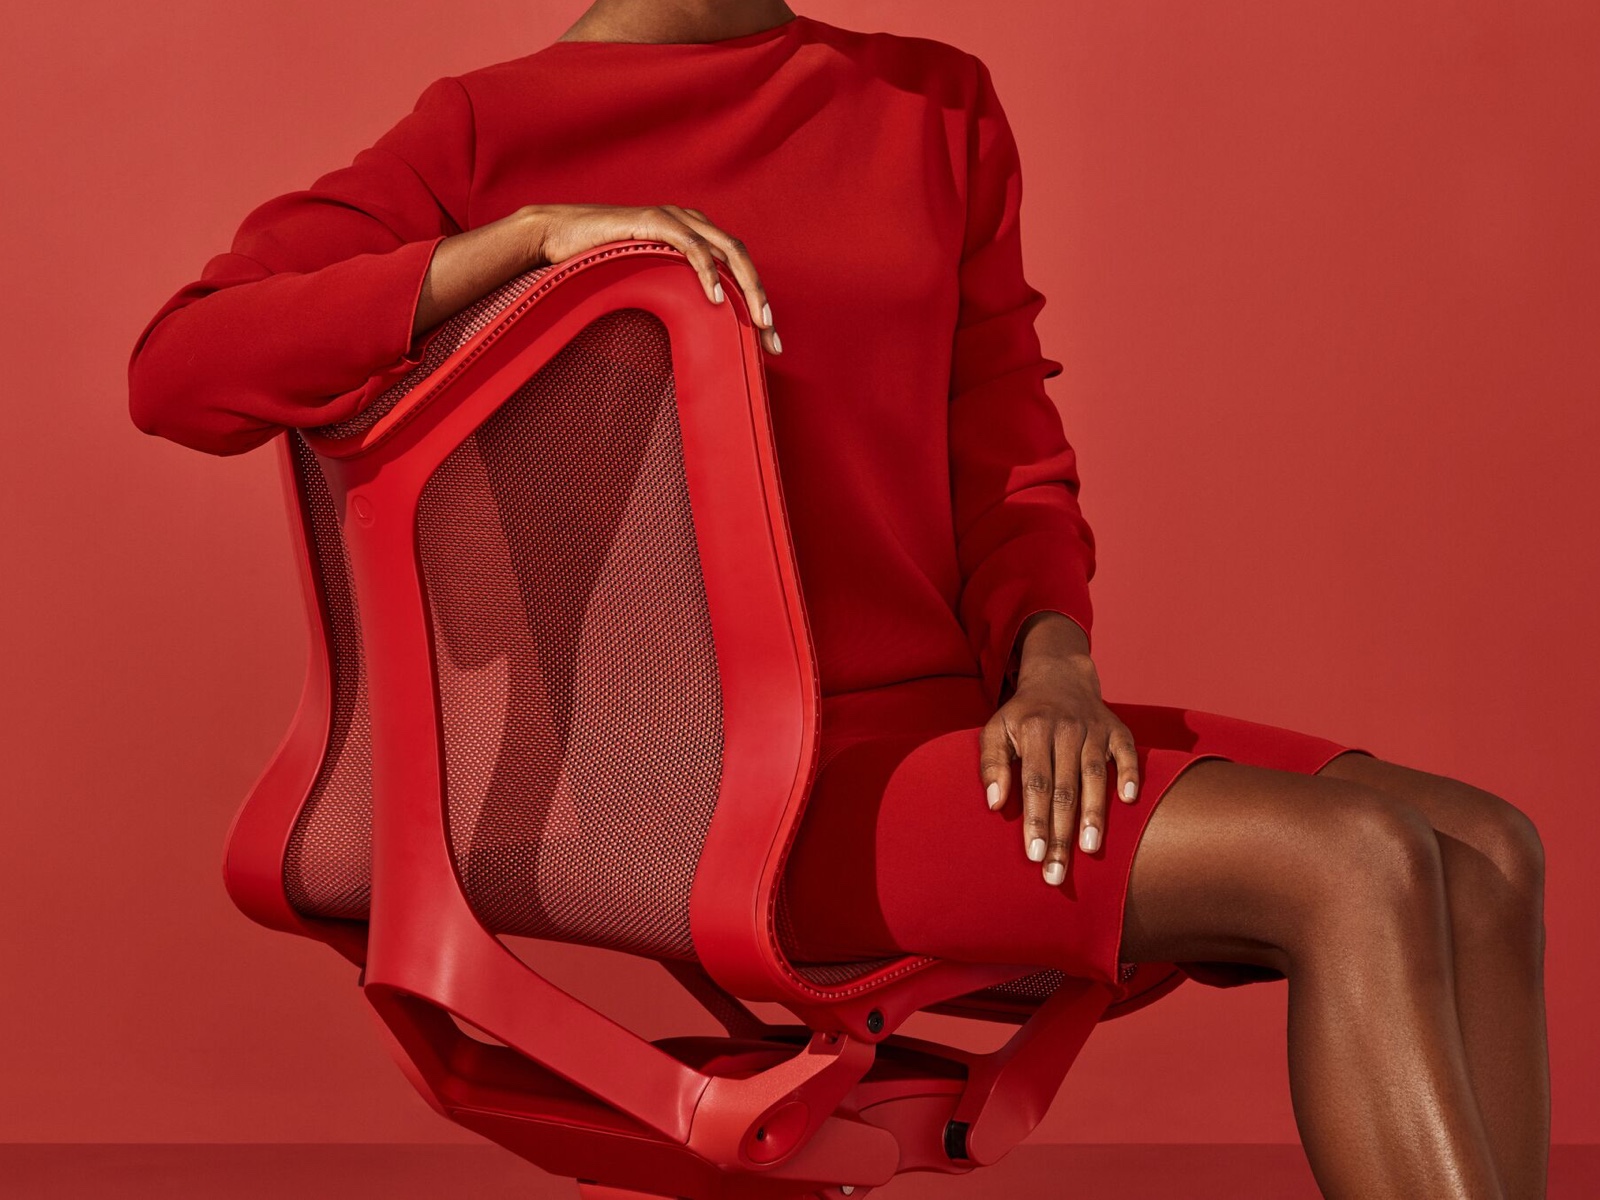 Una donna con un vestito rosso siede su una sedia Cosm con il fondo basso rosso Canyon.